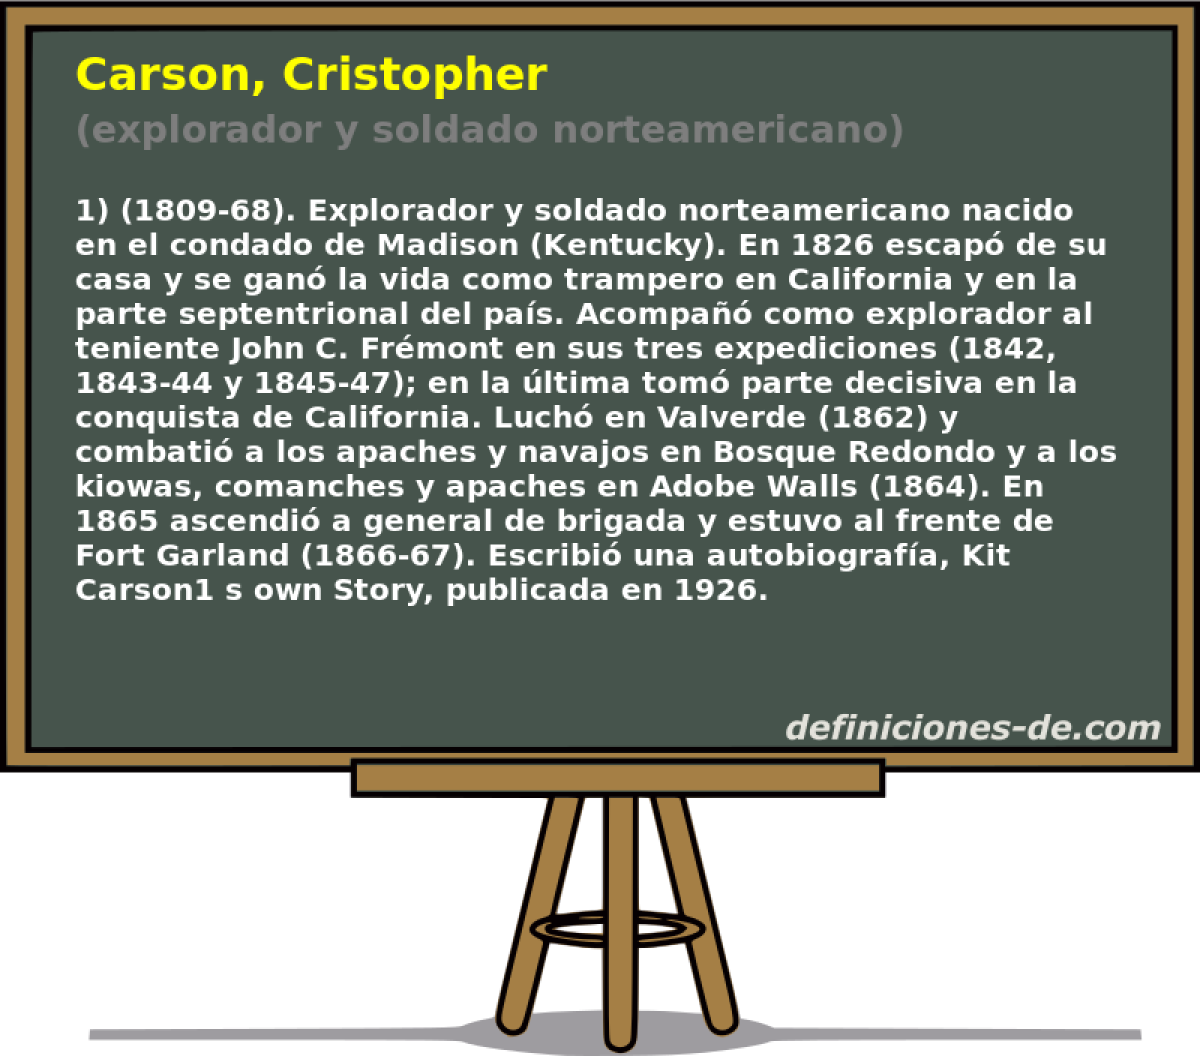 Carson, Cristopher (explorador y soldado norteamericano)